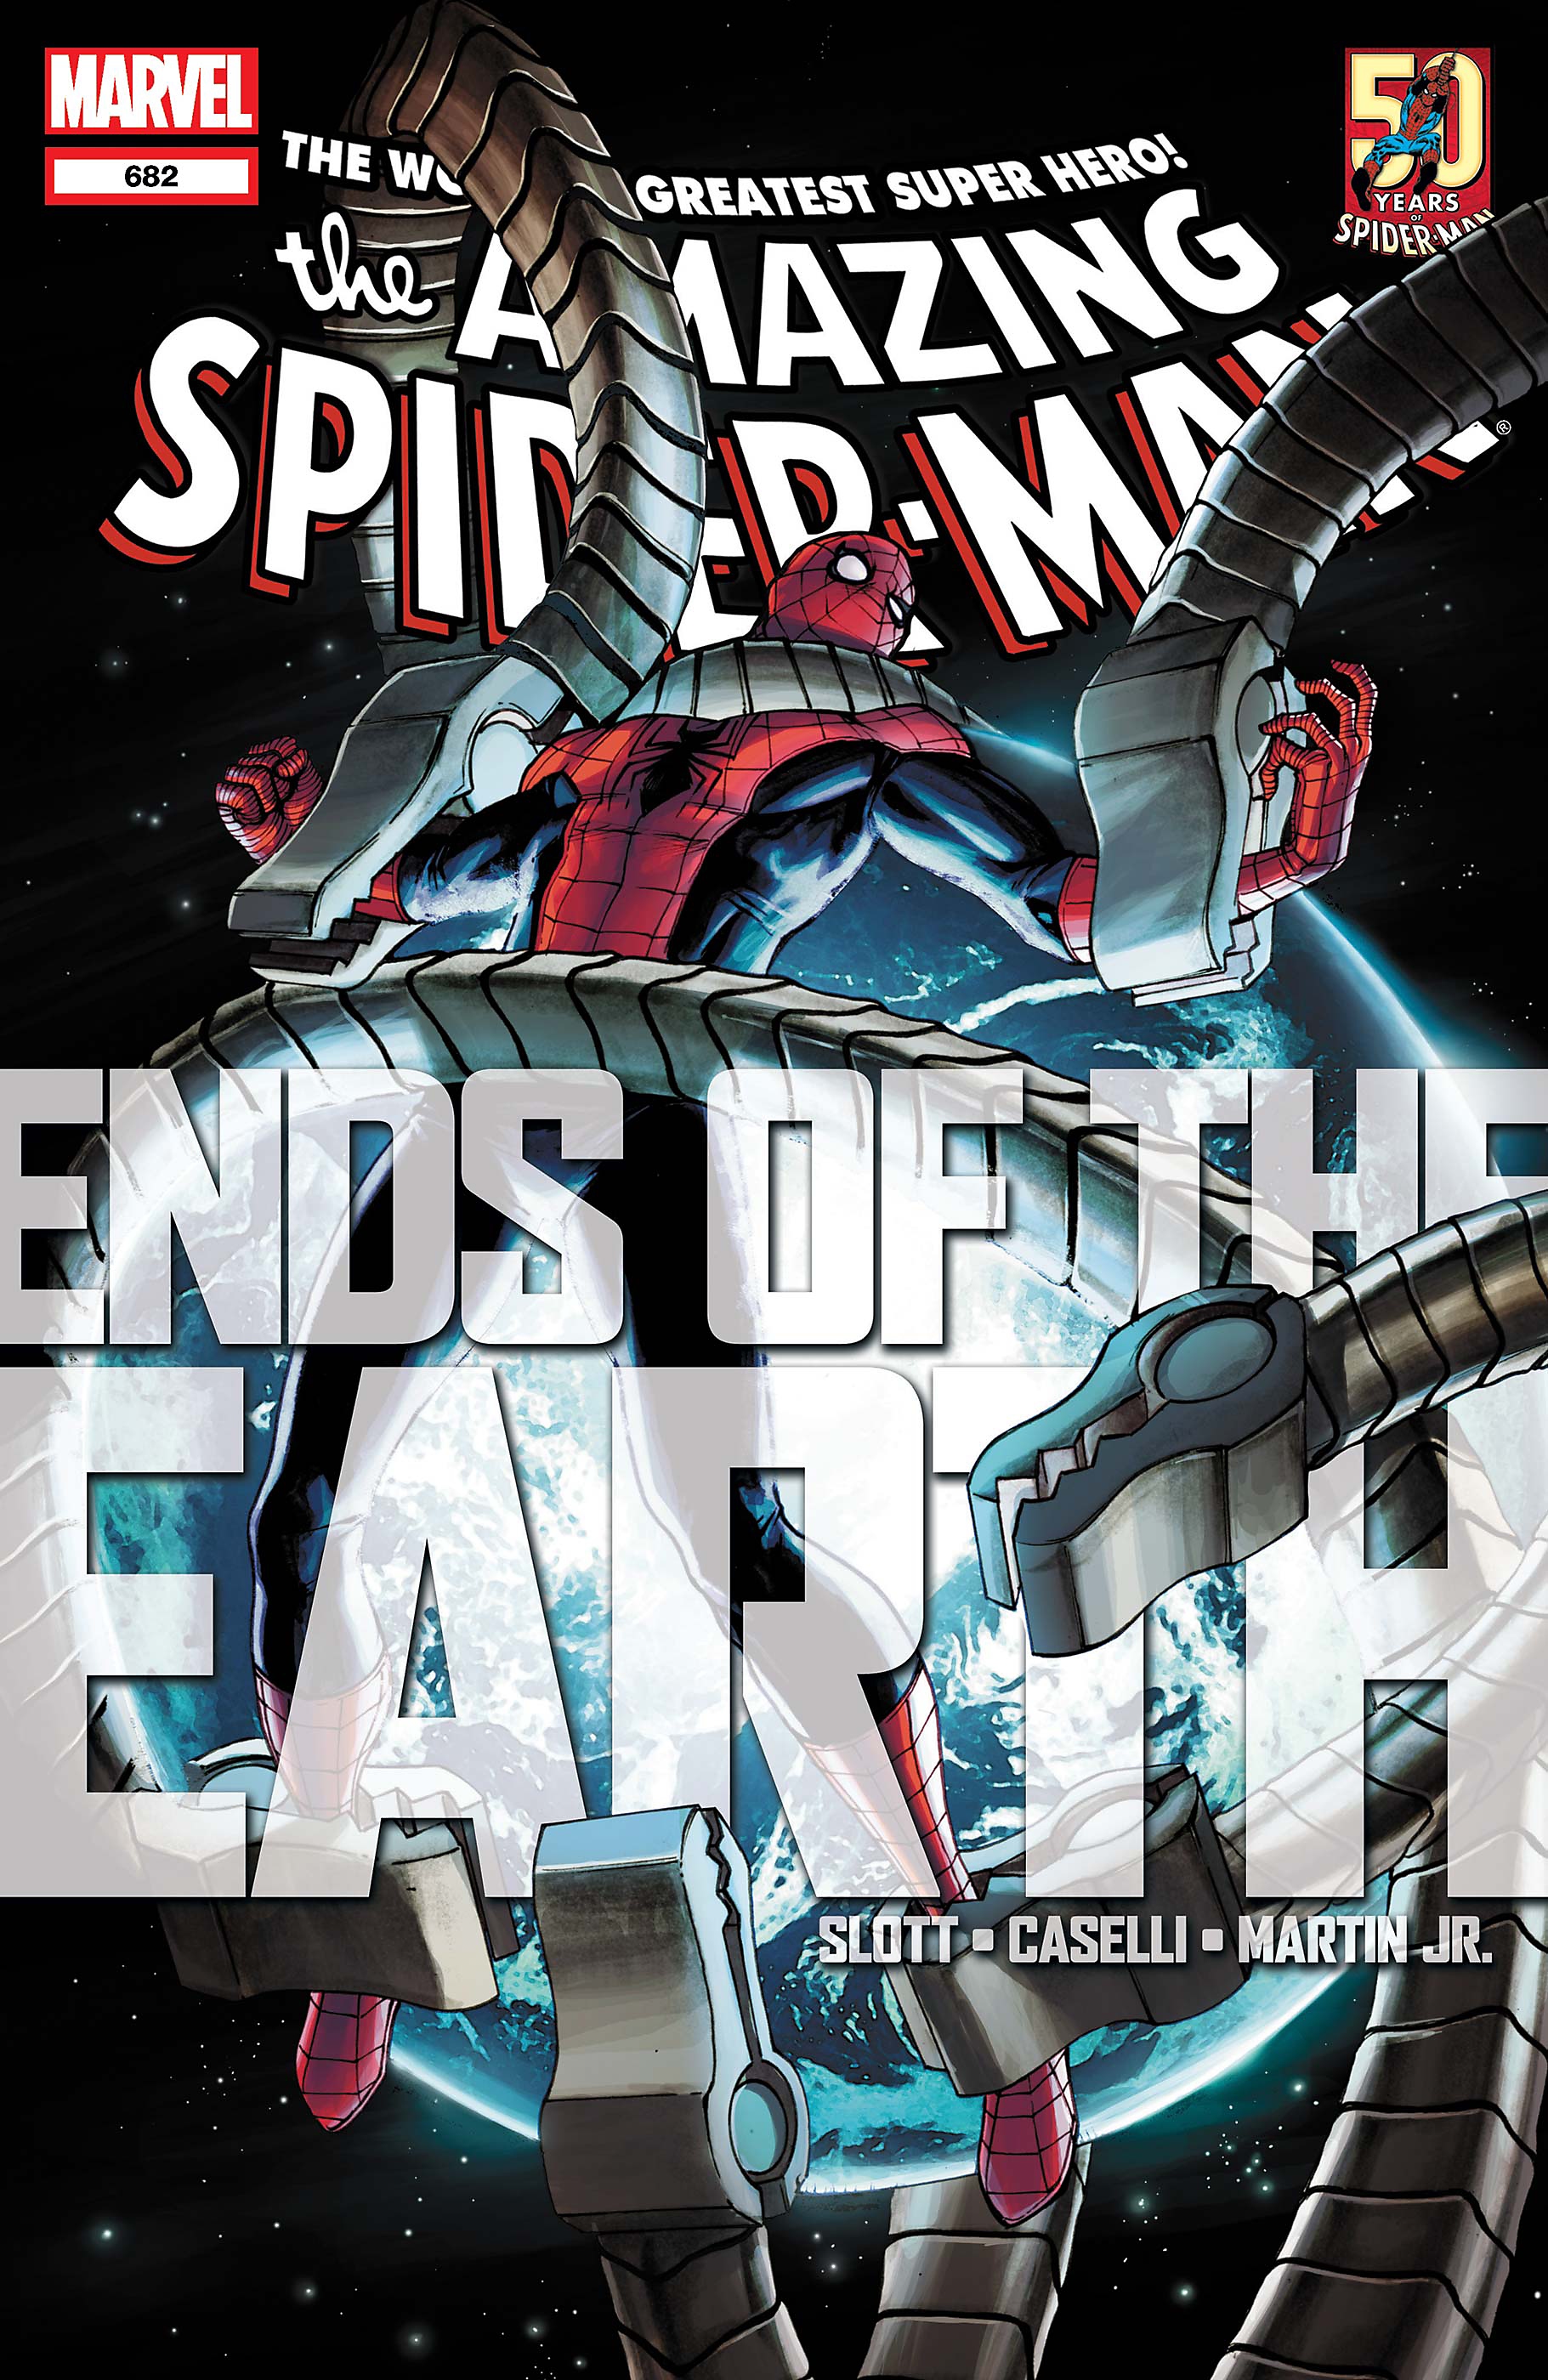 Spider-Man Silver Lining Fumetti consigliati